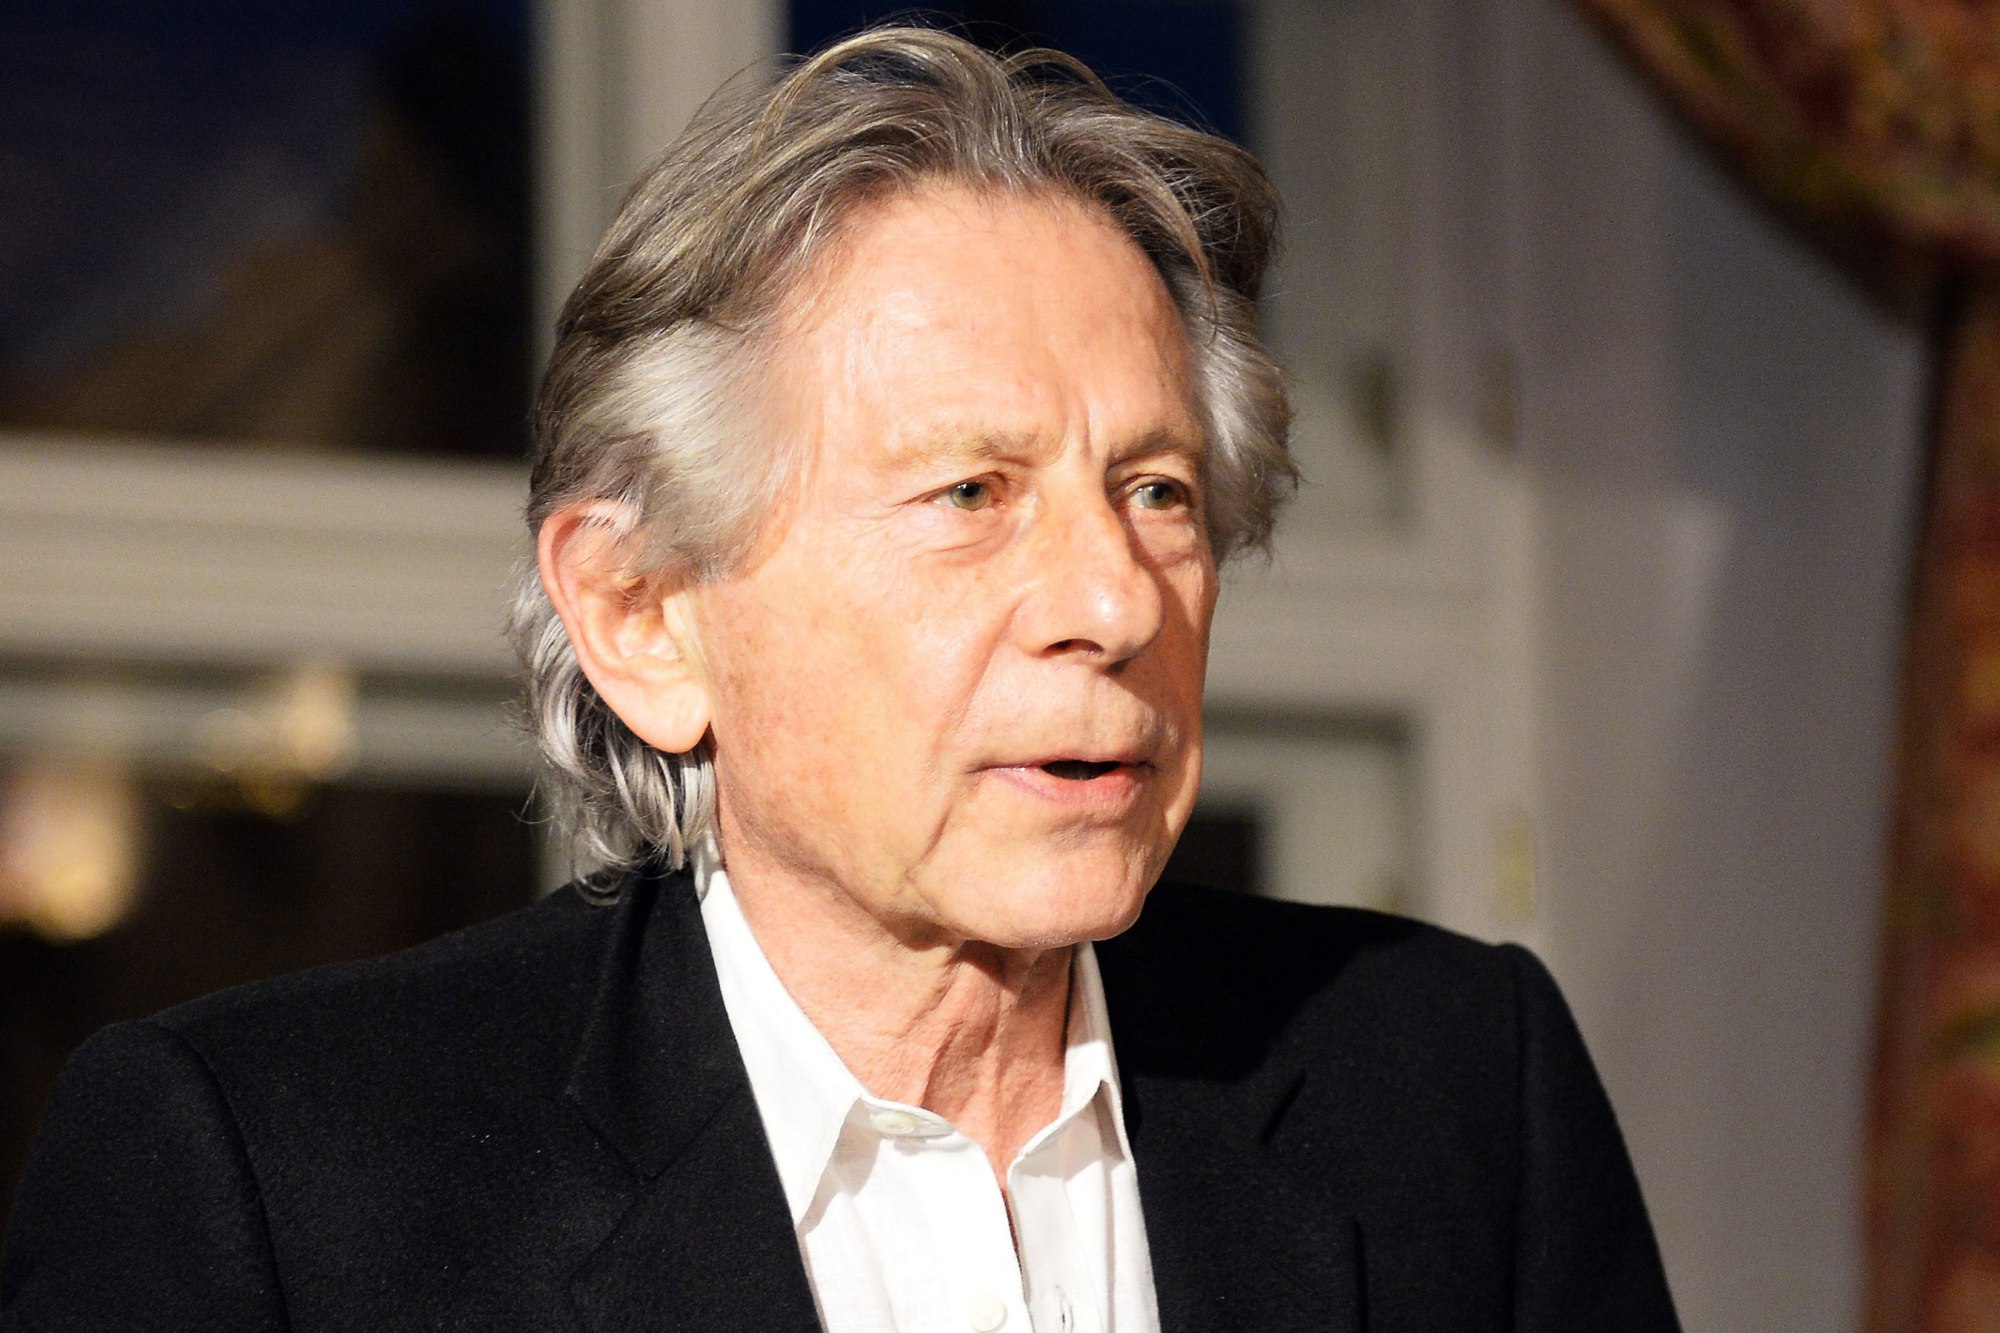 La rétrospective consacrée à Roman Polanski à la Cinémathèque fait polémique